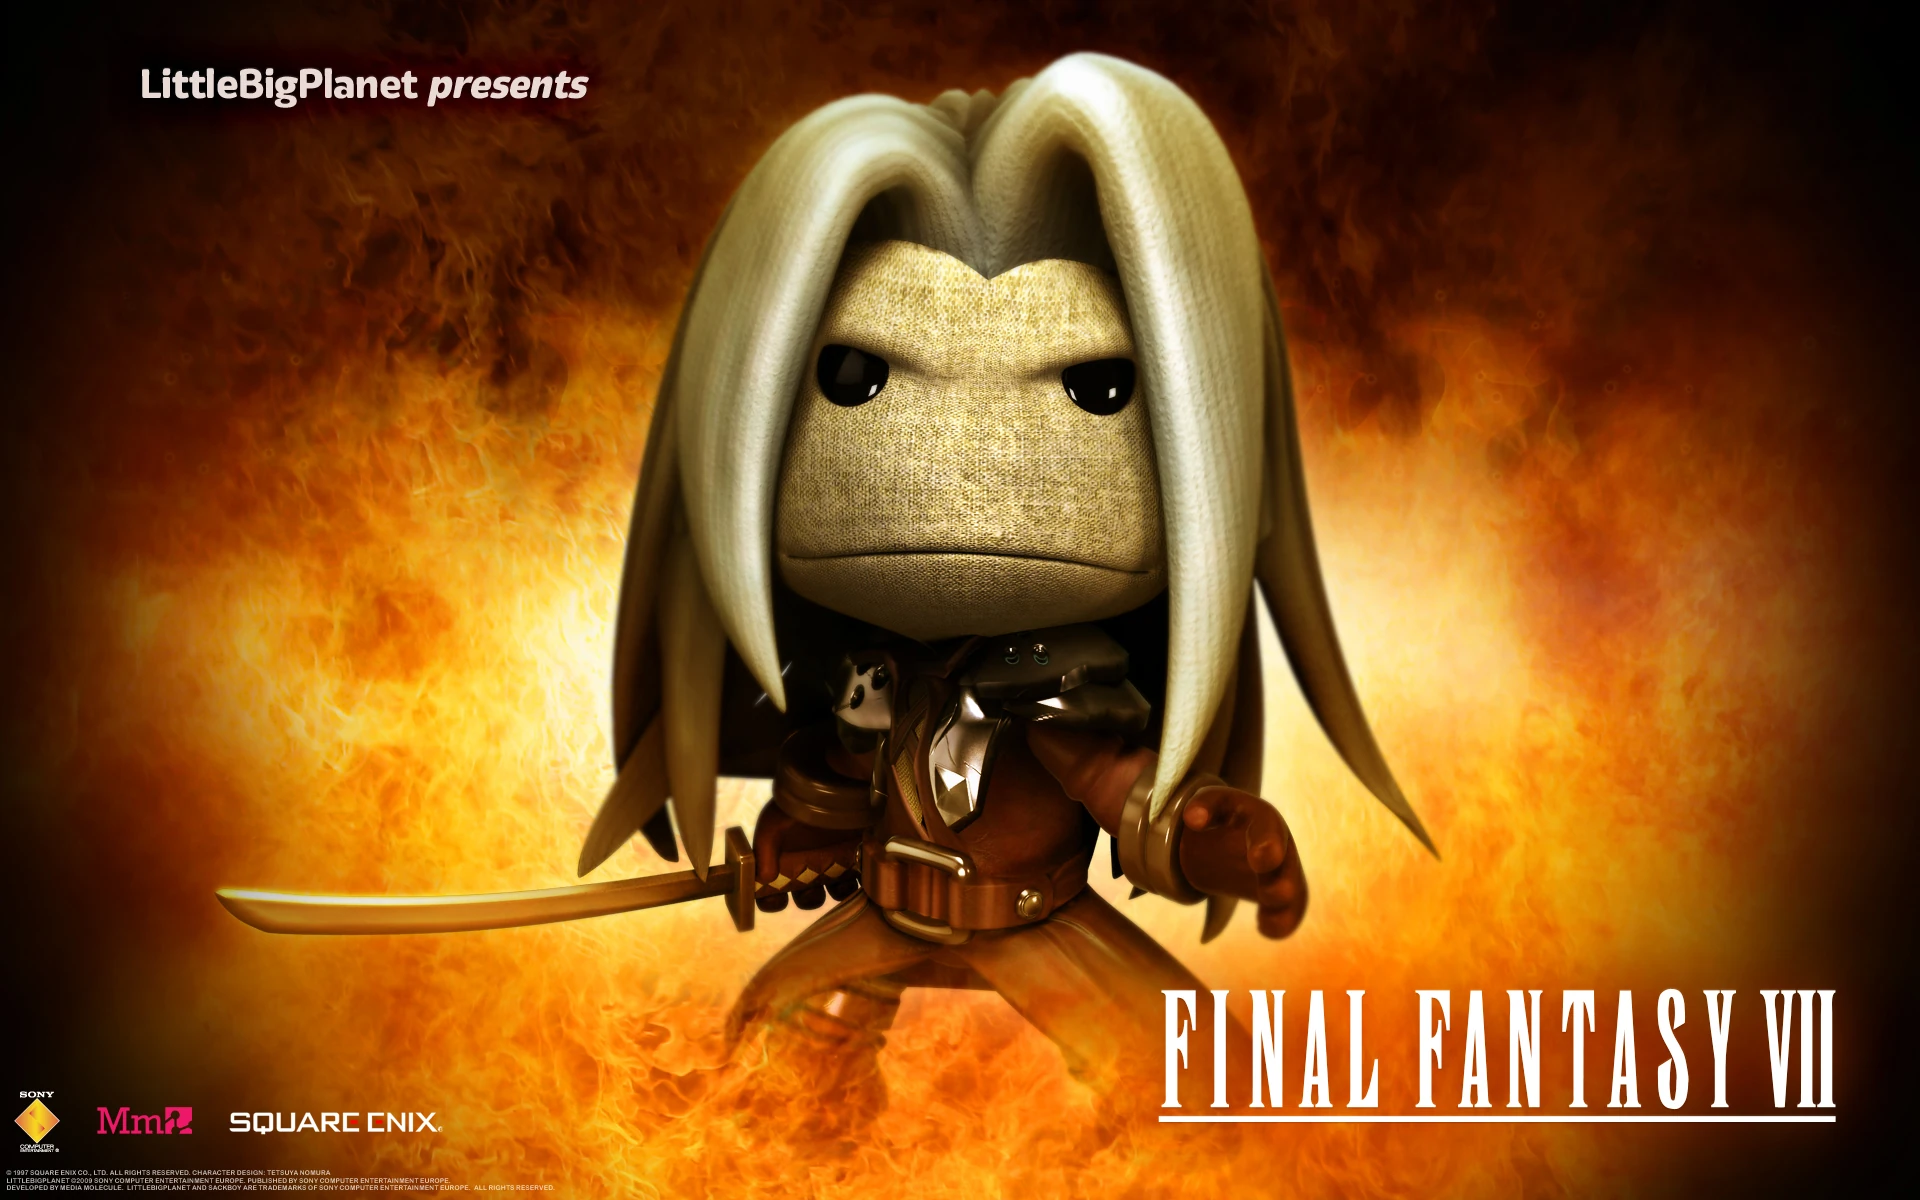 Personagens de Final Fantasy VII em LittleBigPlanet - 02 - Sephiroth